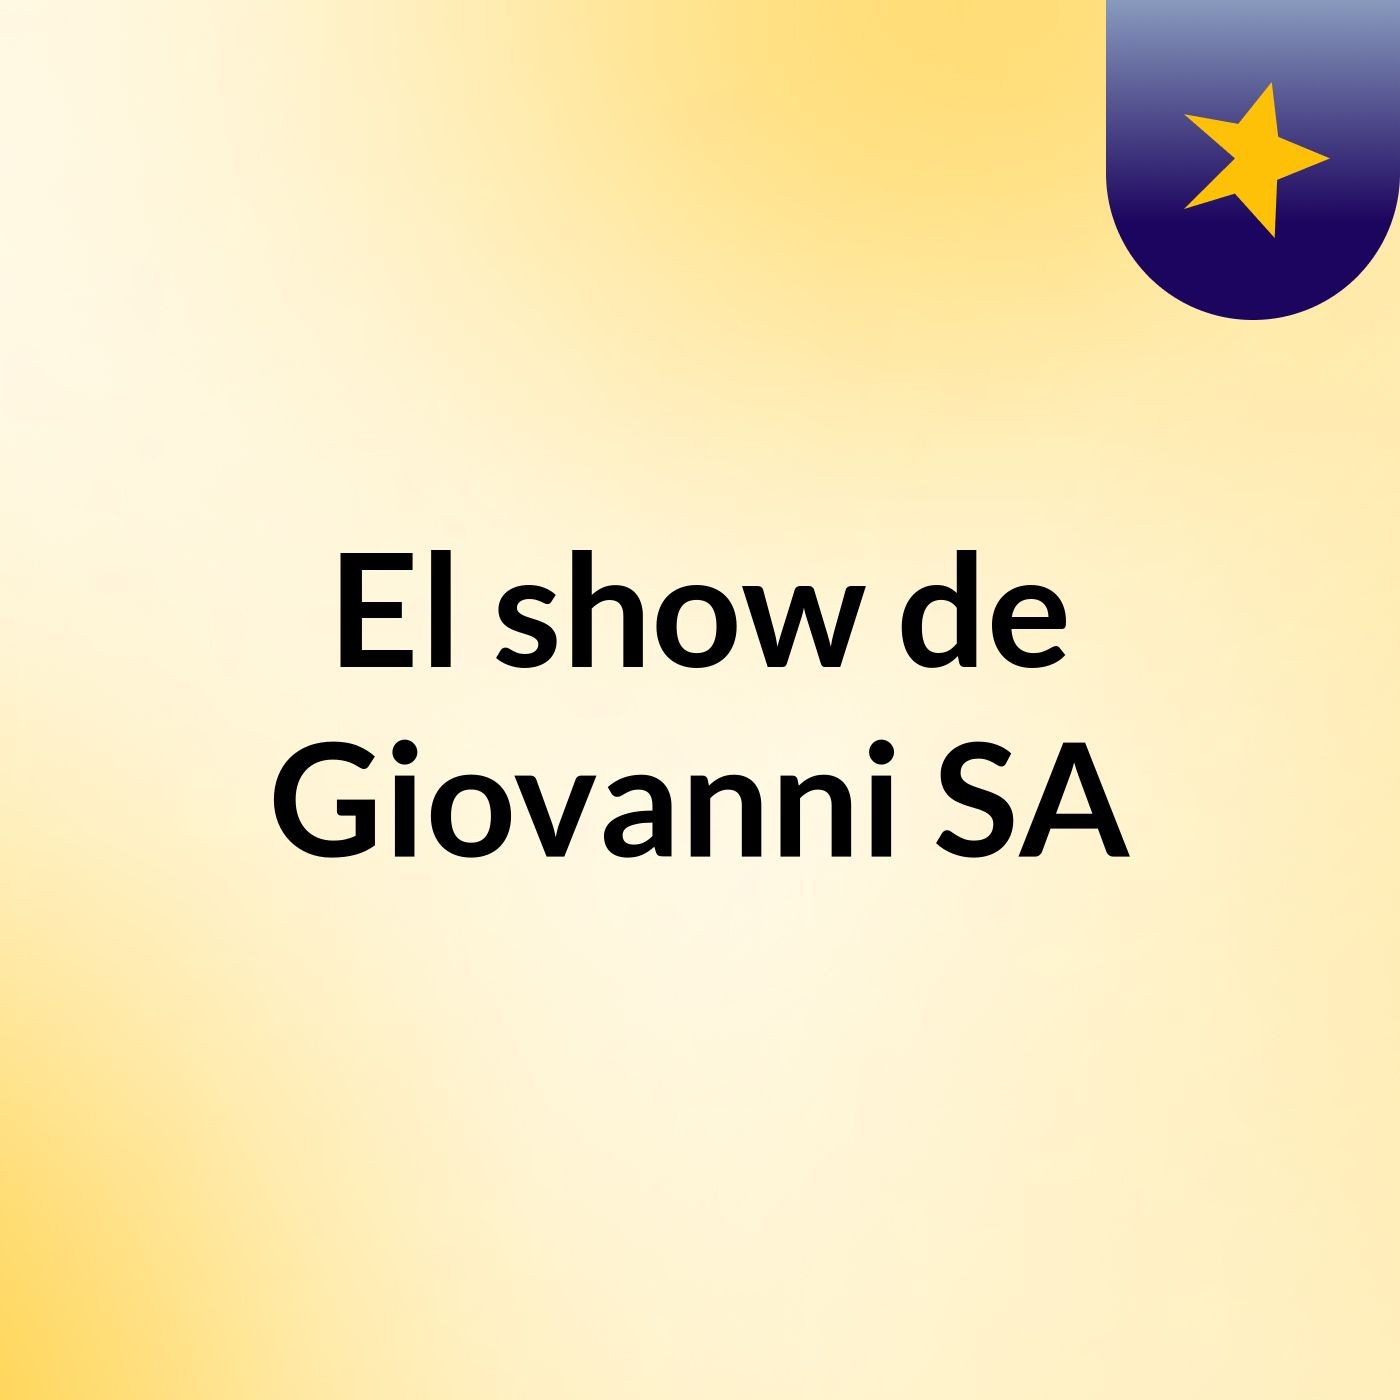 El show de Giovanni SA